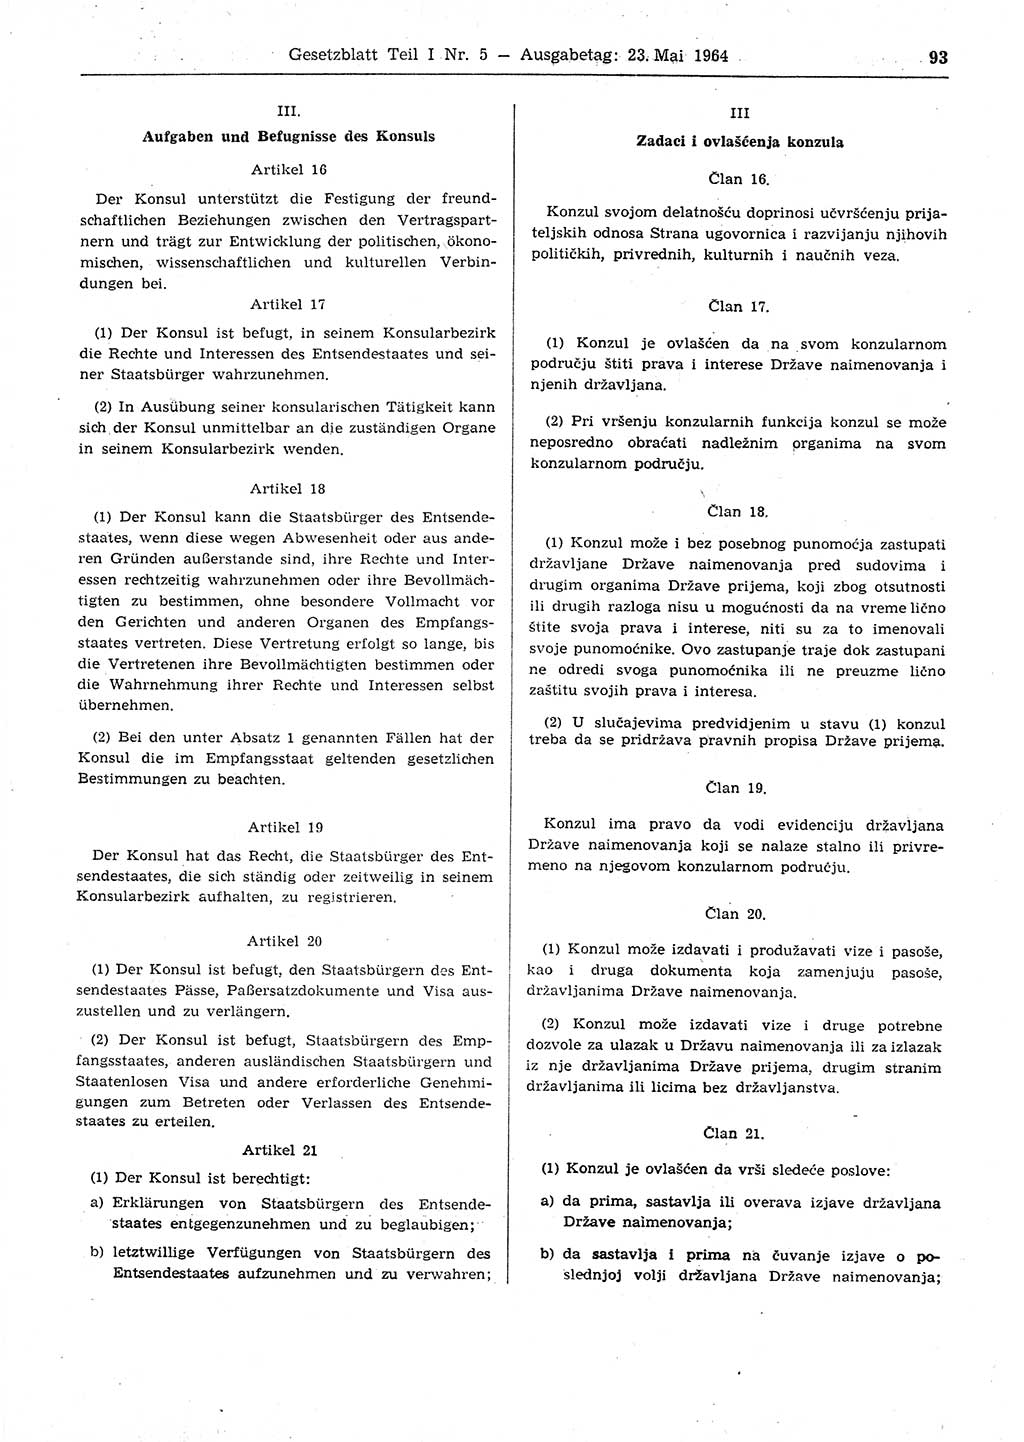 Gesetzblatt (GBl.) der Deutschen Demokratischen Republik (DDR) Teil Ⅰ 1964, Seite 93 (GBl. DDR Ⅰ 1964, S. 93)